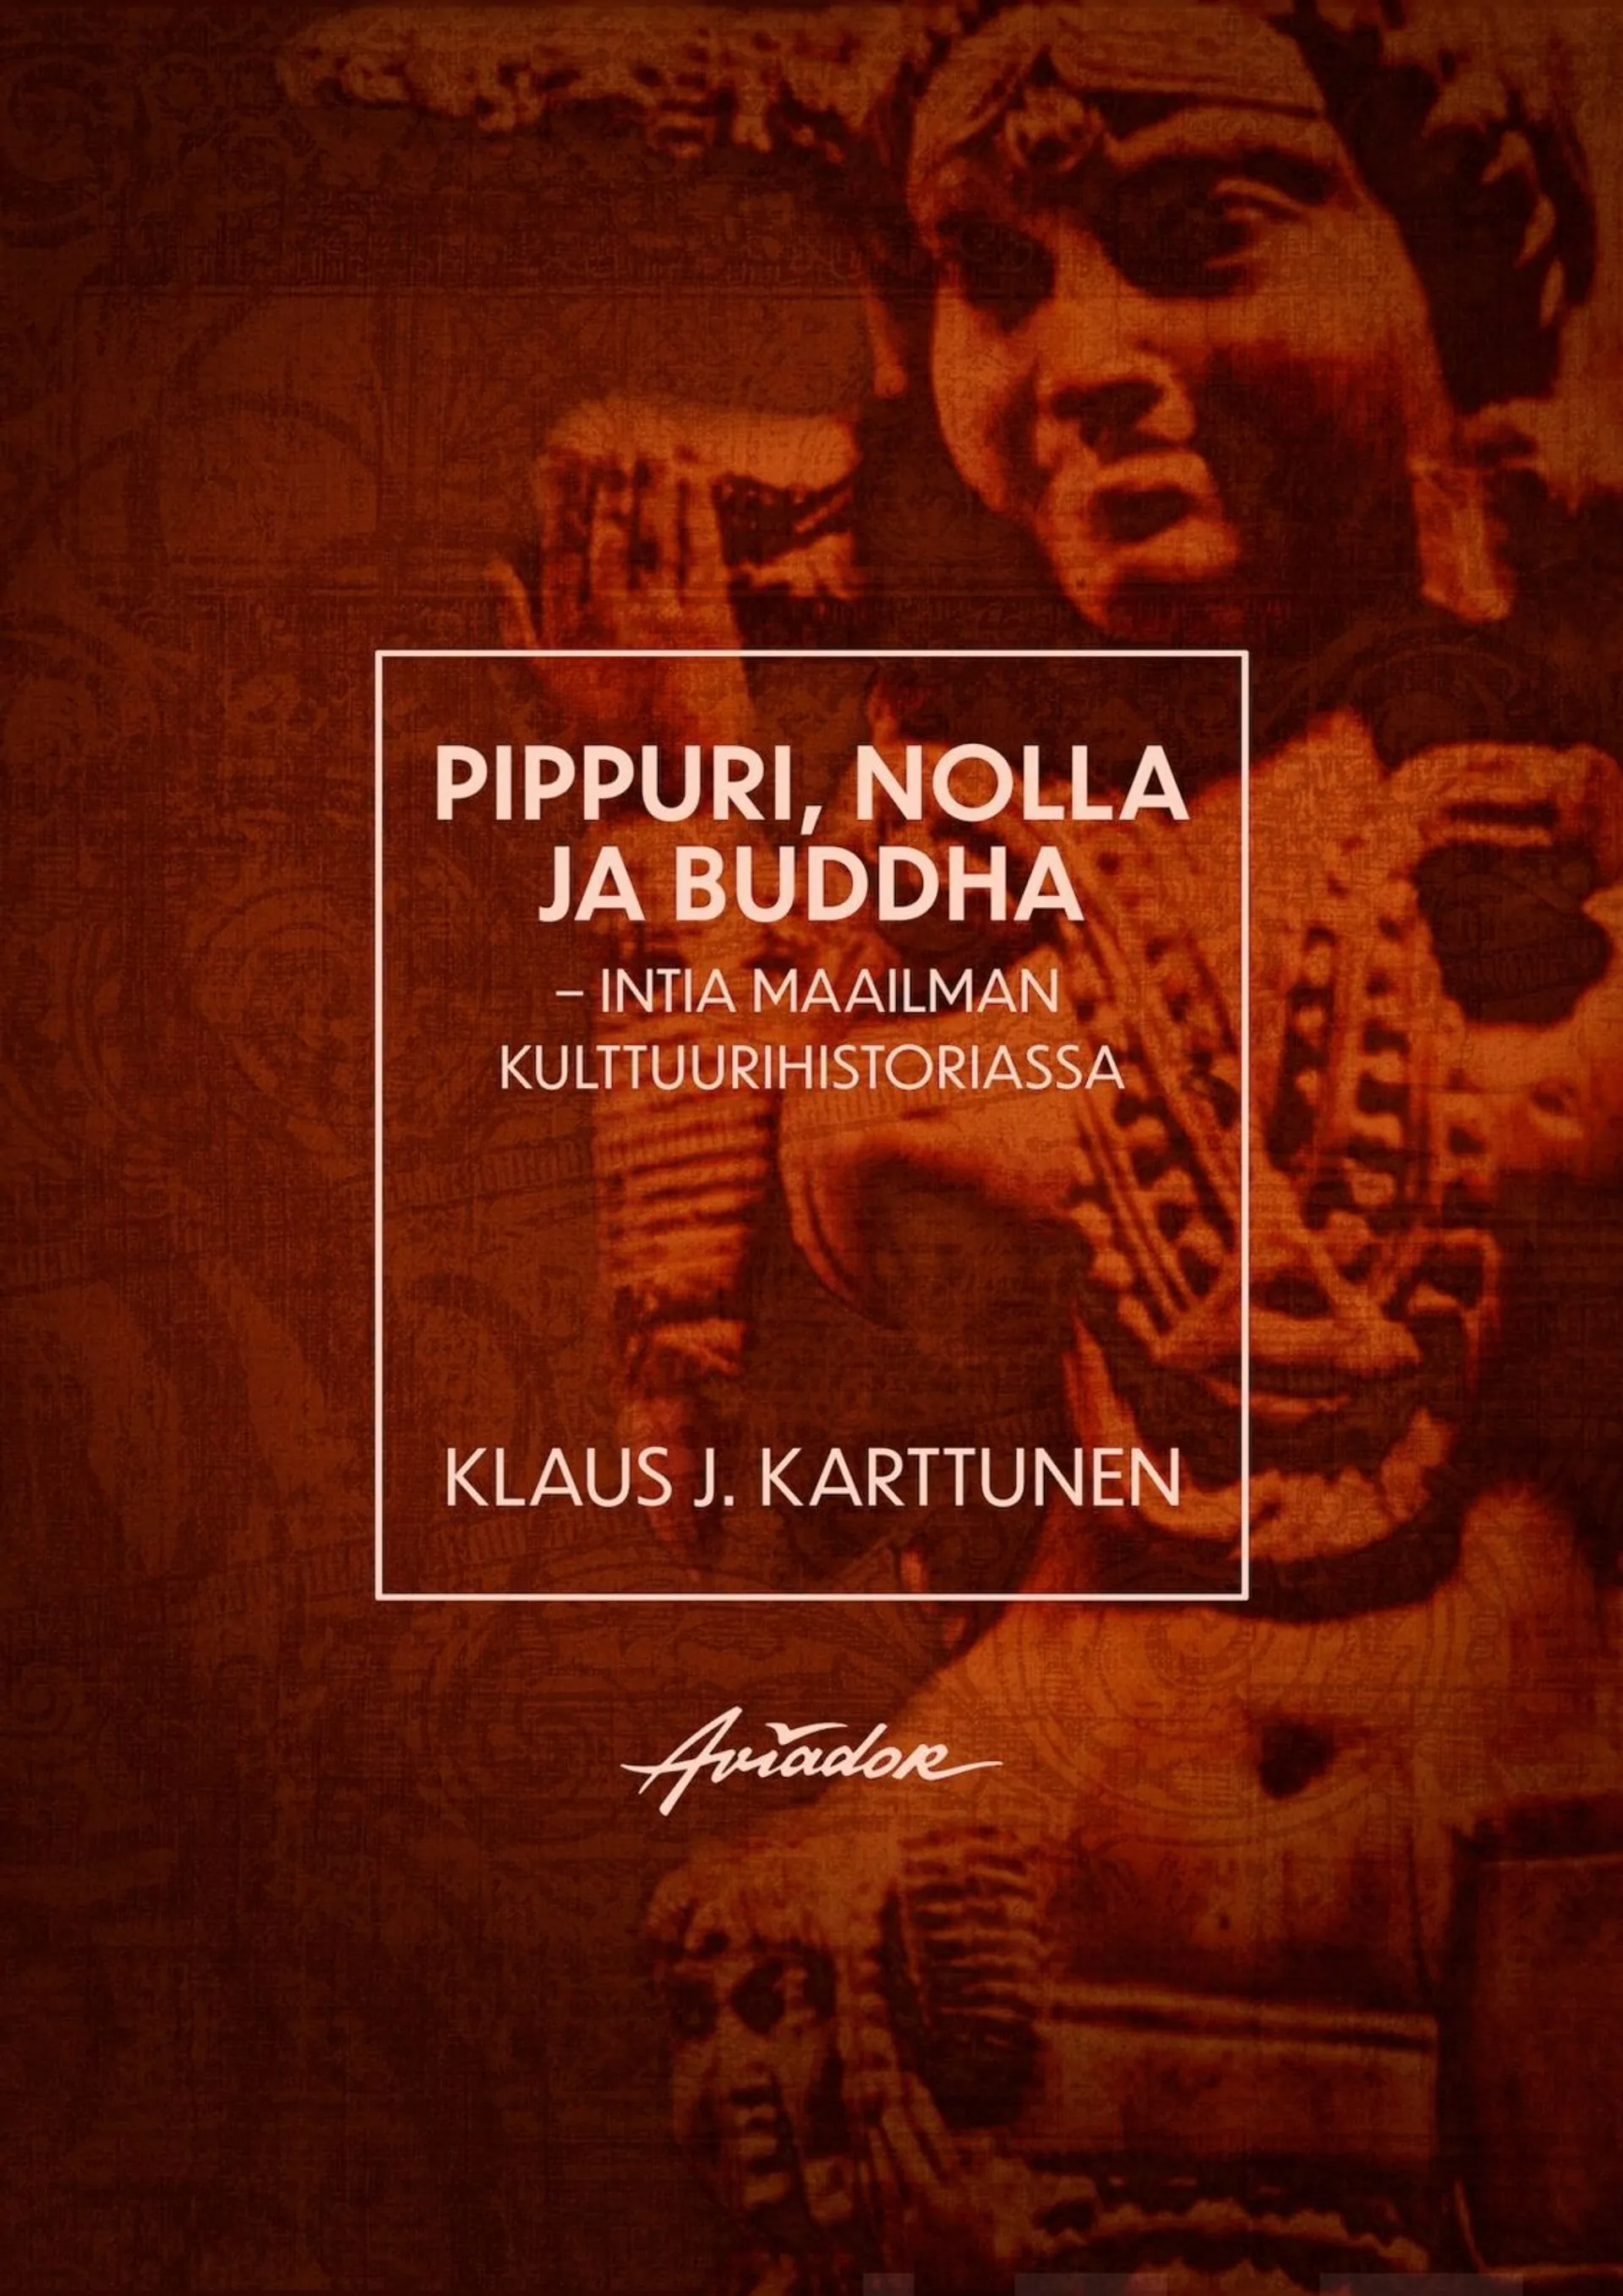 Karttunen, Pippuri, nolla ja Buddha - Intia maailman kulttuurihistoriassa